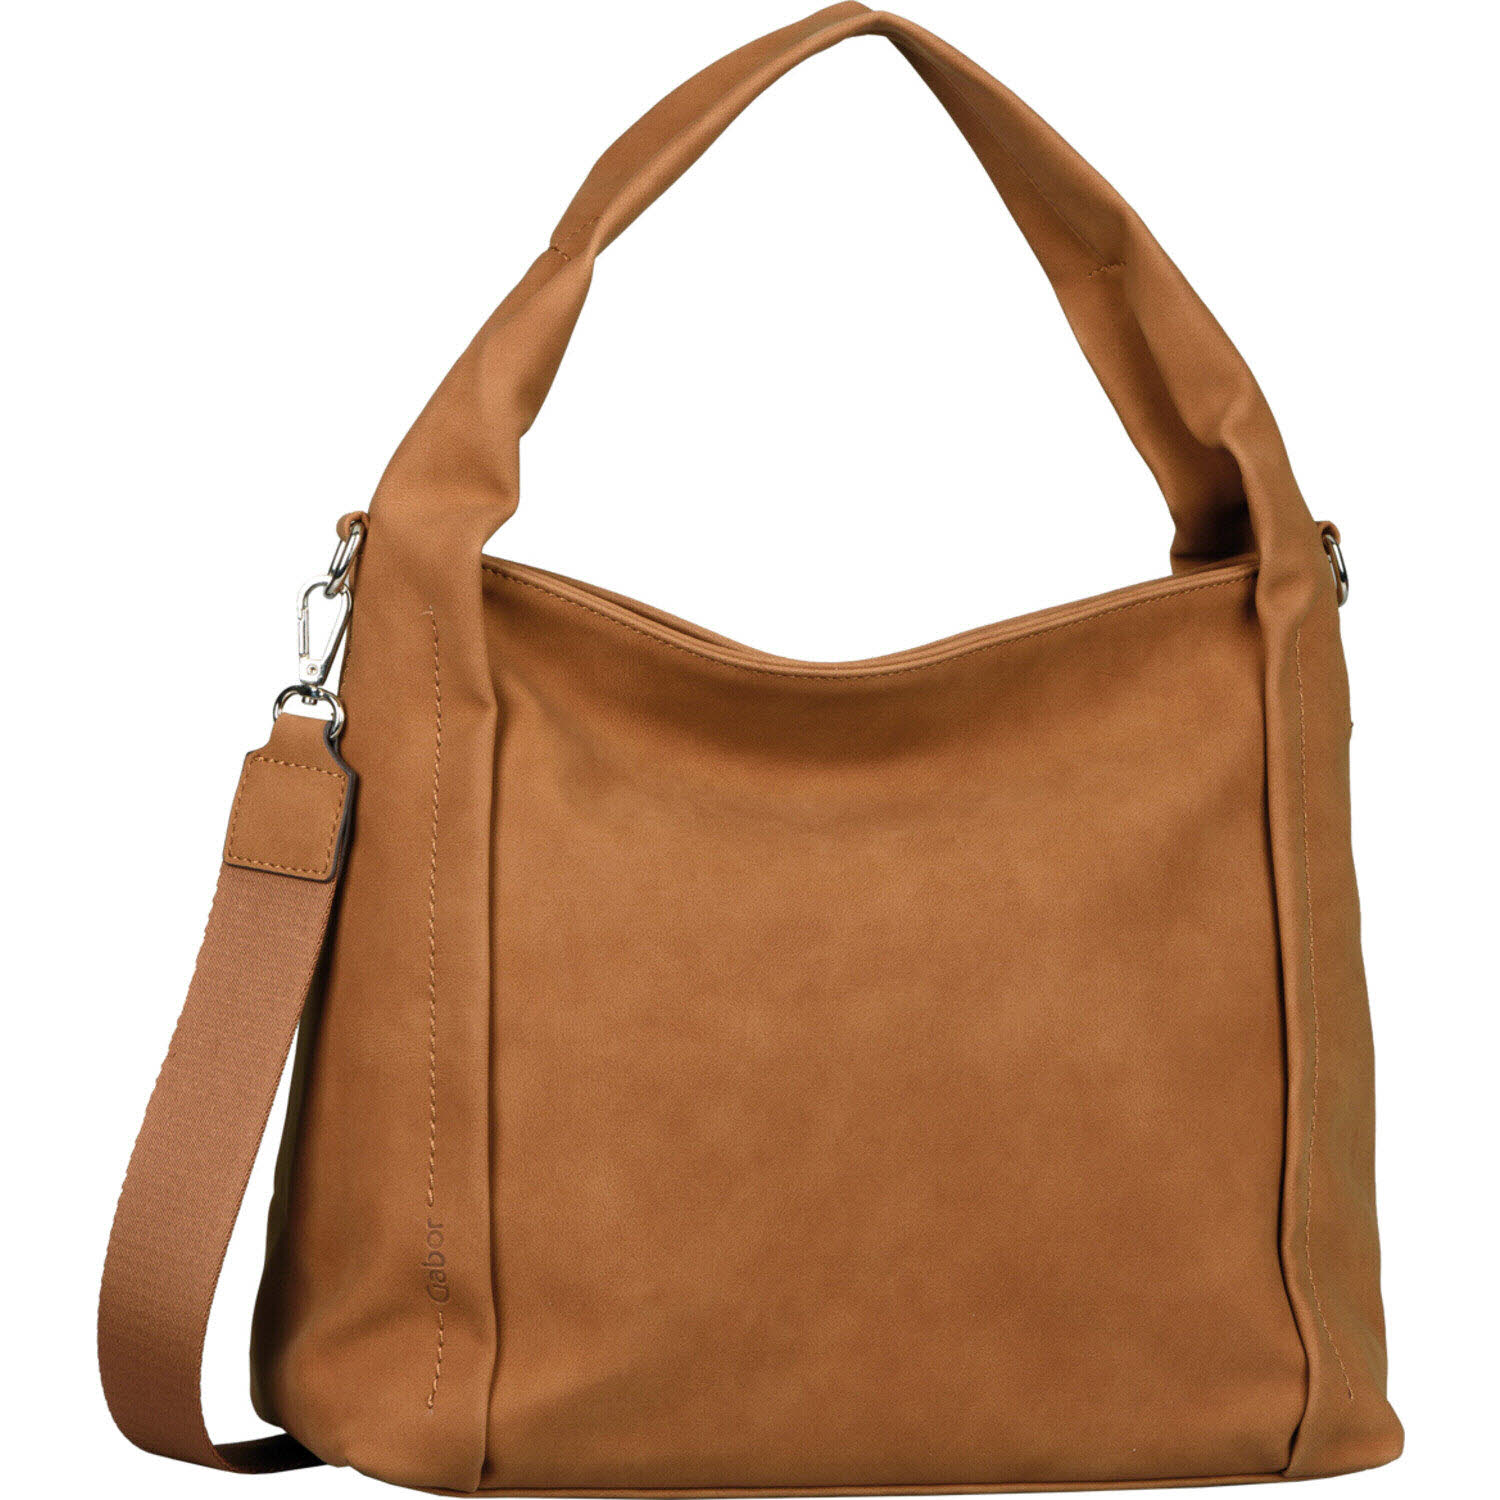 Damen Schultertasche von Gabor Bags auch in Braun erhältlich